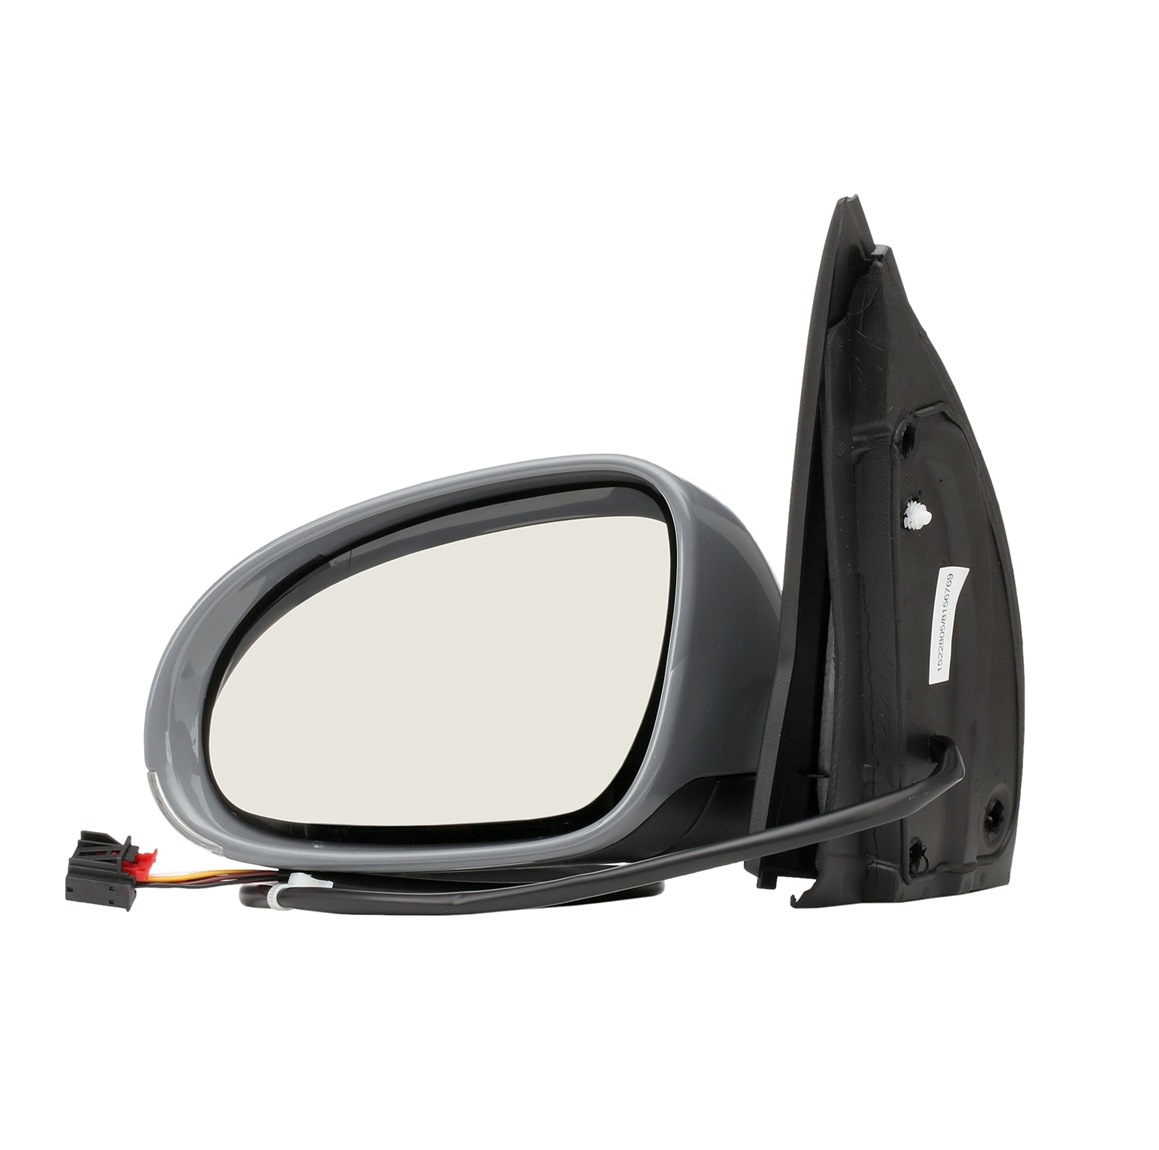 RIDEX 50O0035 Espejo retrovisor izquierda, eléctrico, térmico, espejo completo, asférico, para vehíc. con volante a la izquierda